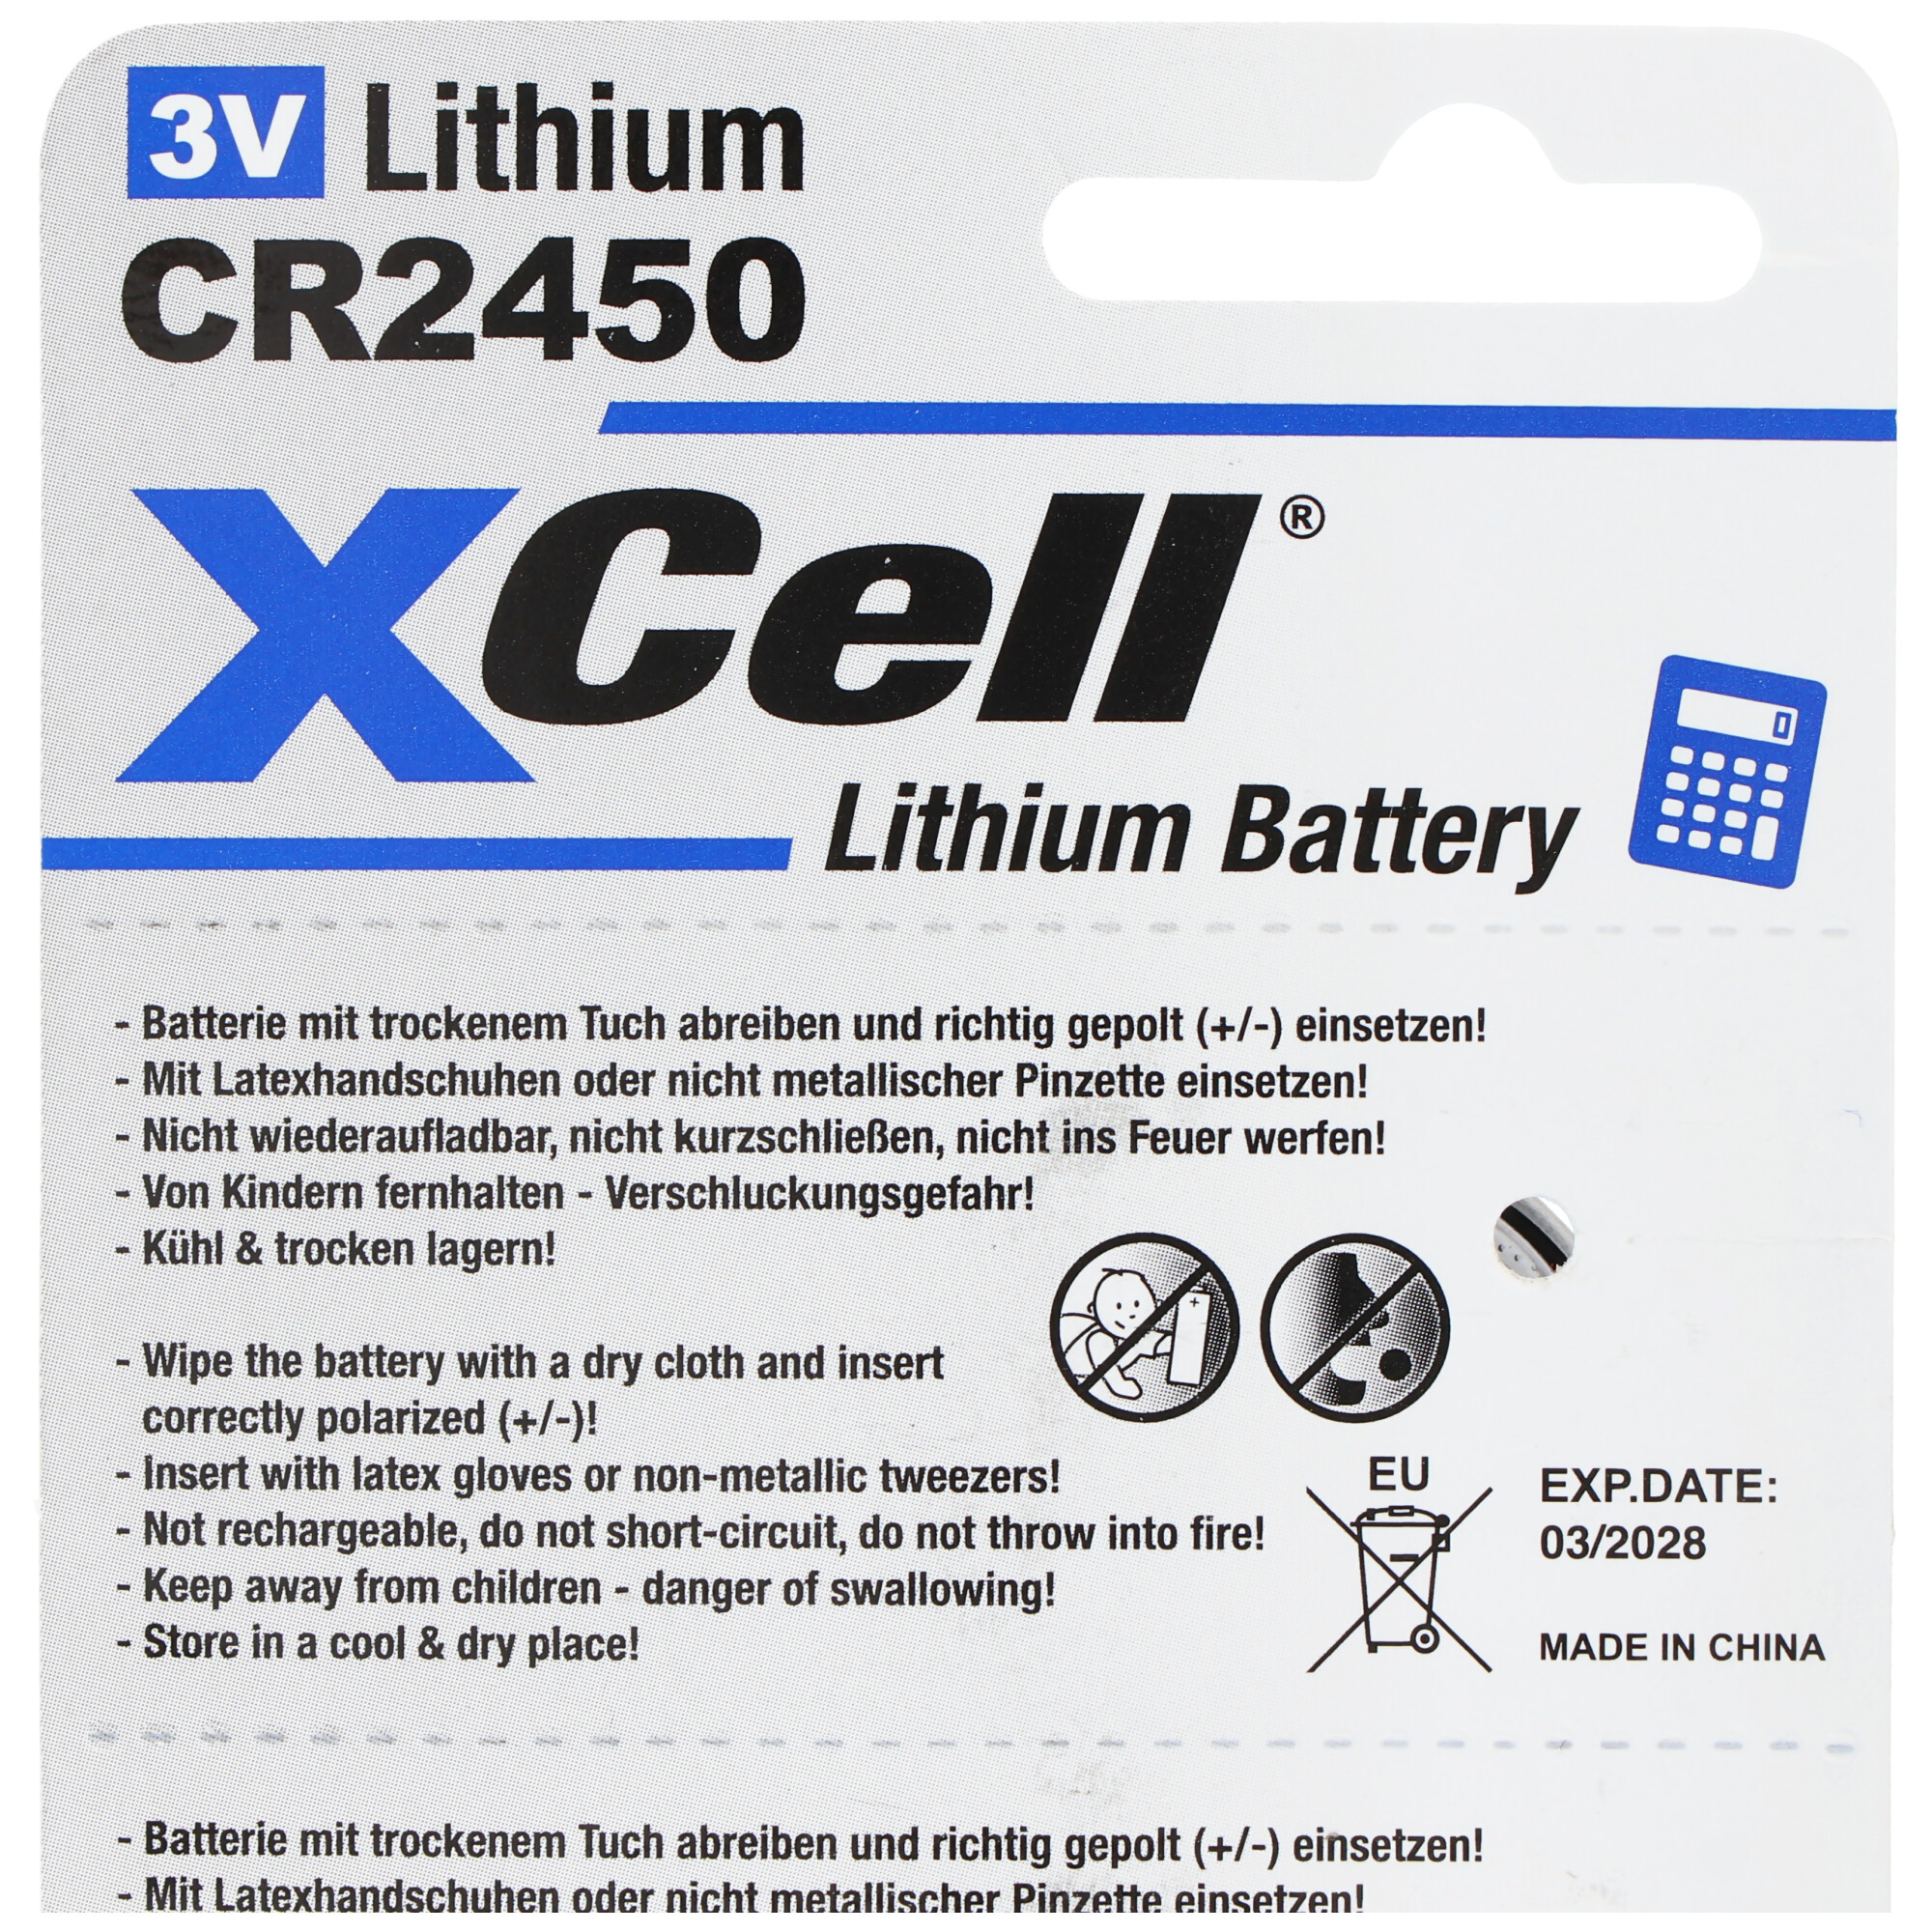 5er-Sparset CR2450 Lithium Batterie 3V, CR2450 Batterien im praktischen 5er Set